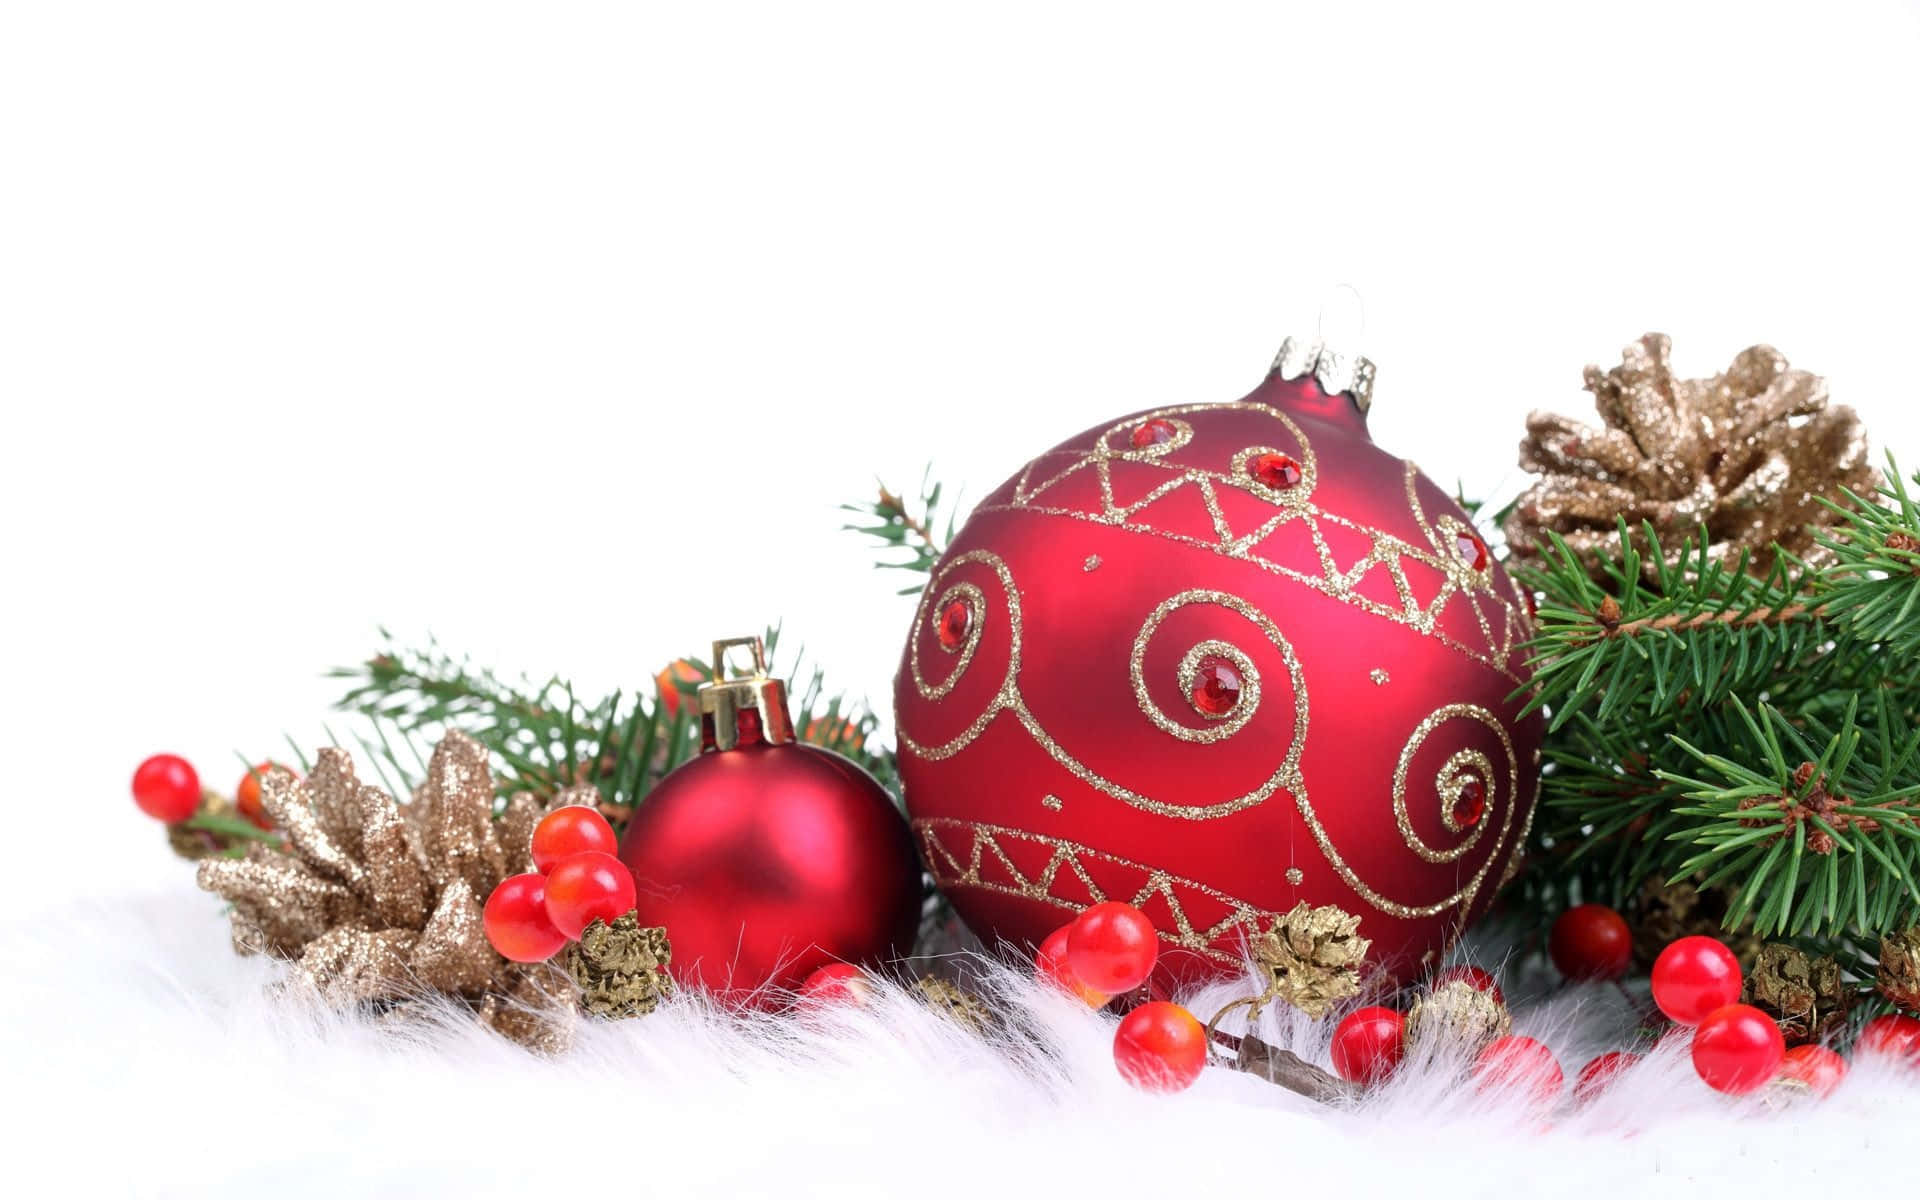 Feiernsie Die Feiertage Mit Diesen Traditionellen Glas-weihnachtskugeln.